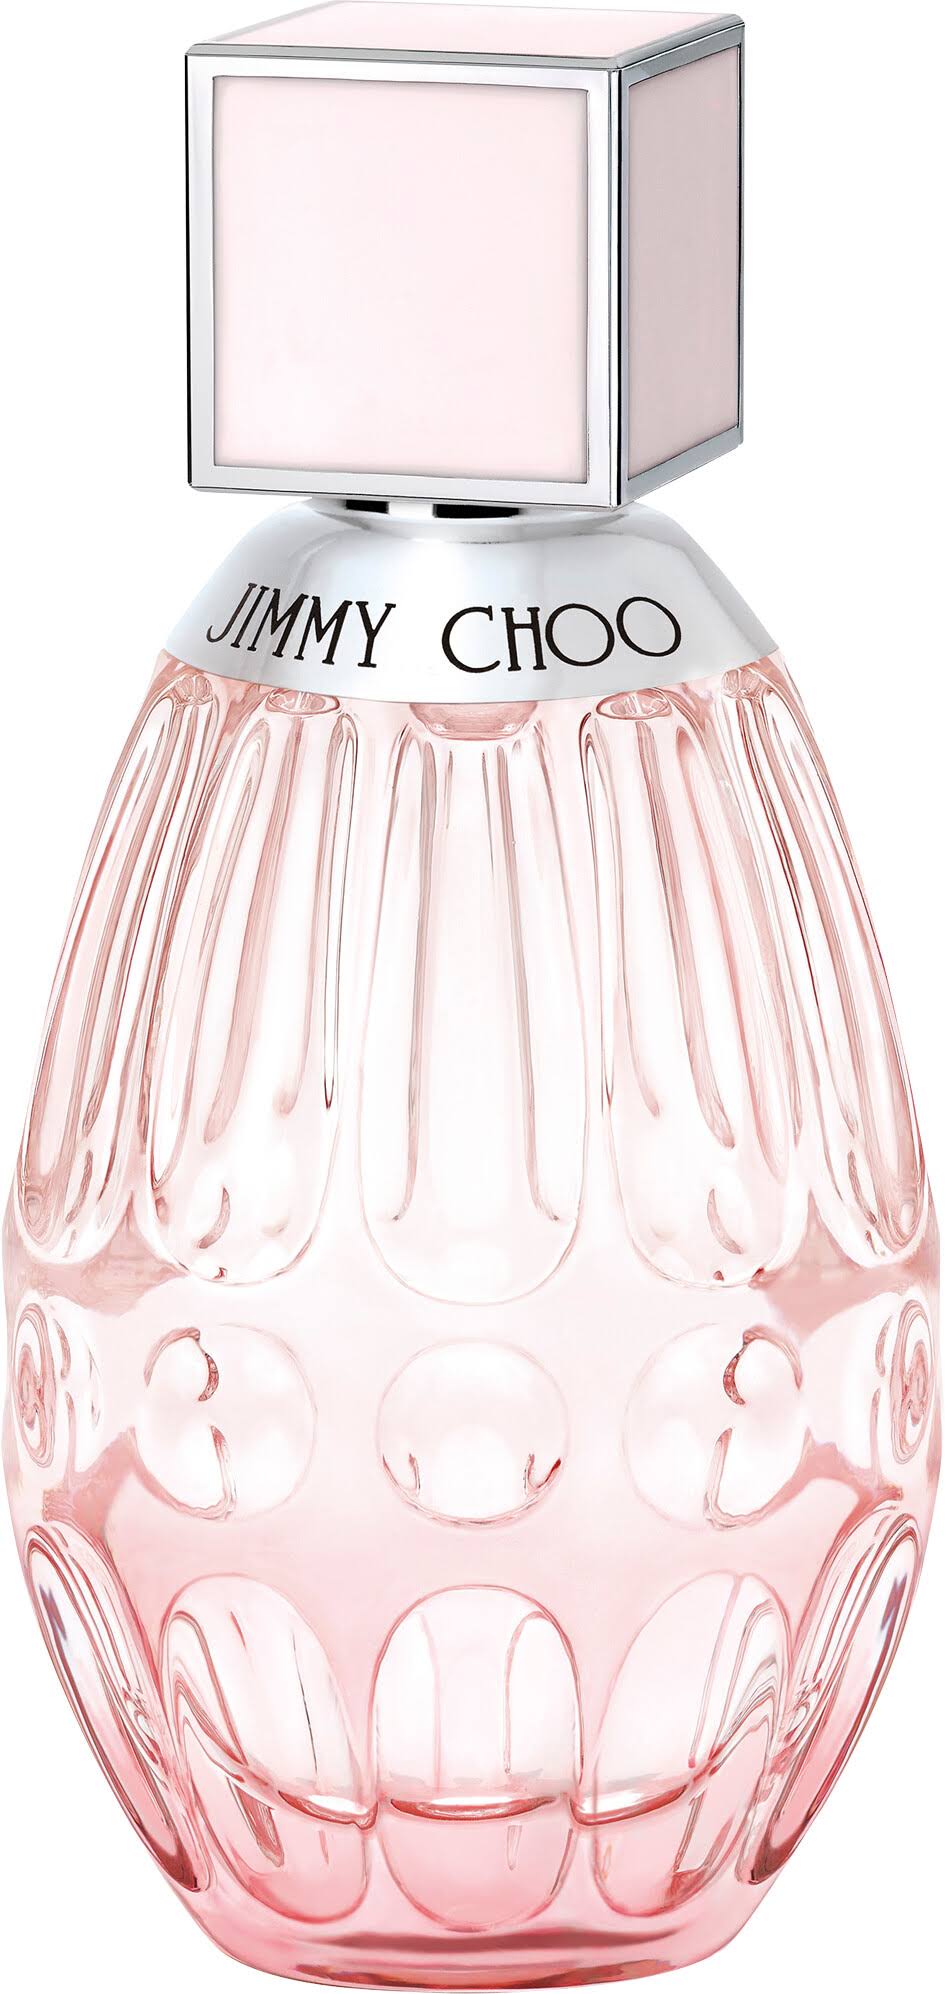 Jimmy Choo L'eau Eau De Toilette Spray - 40ml